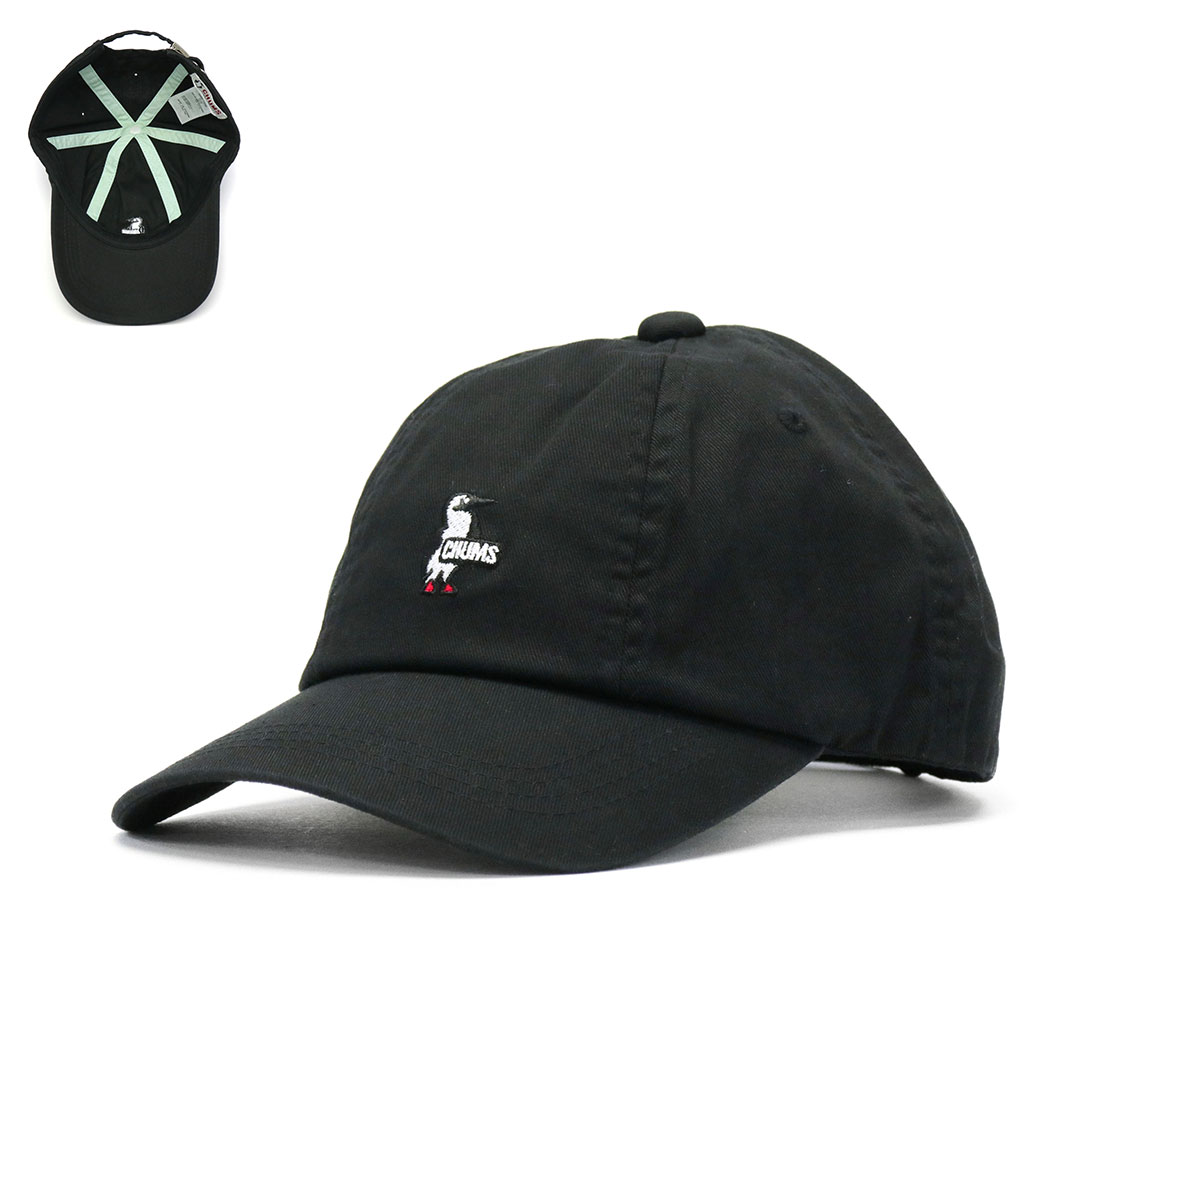 日本正規品 チャムス キャップ メンズ レディース ブランド CHUMS 帽子 浅め コットン 綿 ベースボールキャップ ロゴ アウトドア  CH05-1236